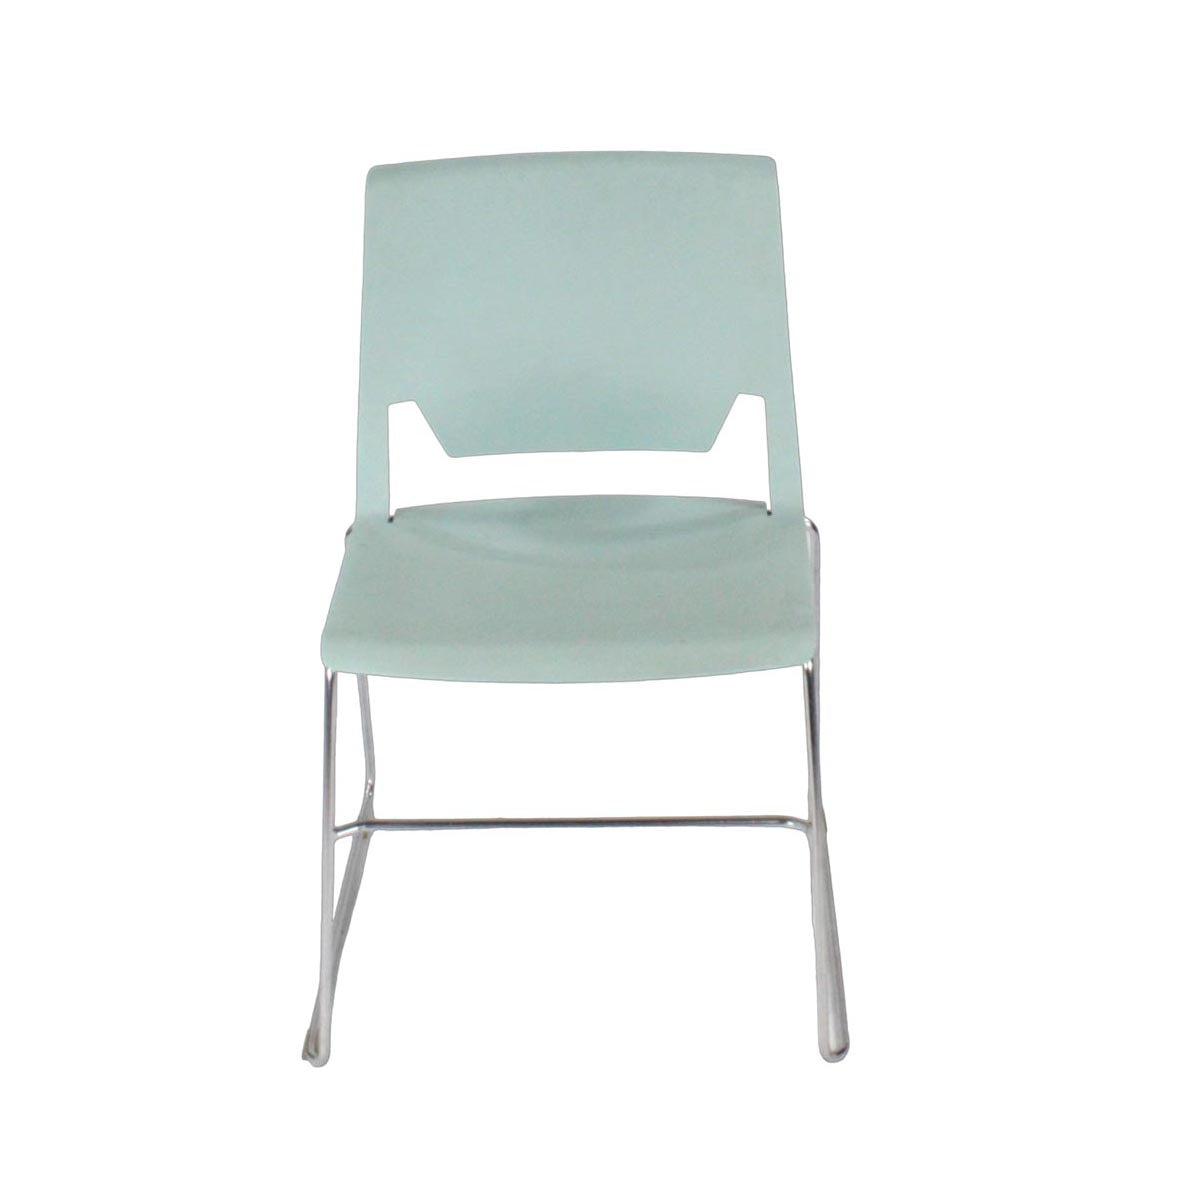 Haworth: Very Comforto 62 stoel in blauw - gerenoveerd